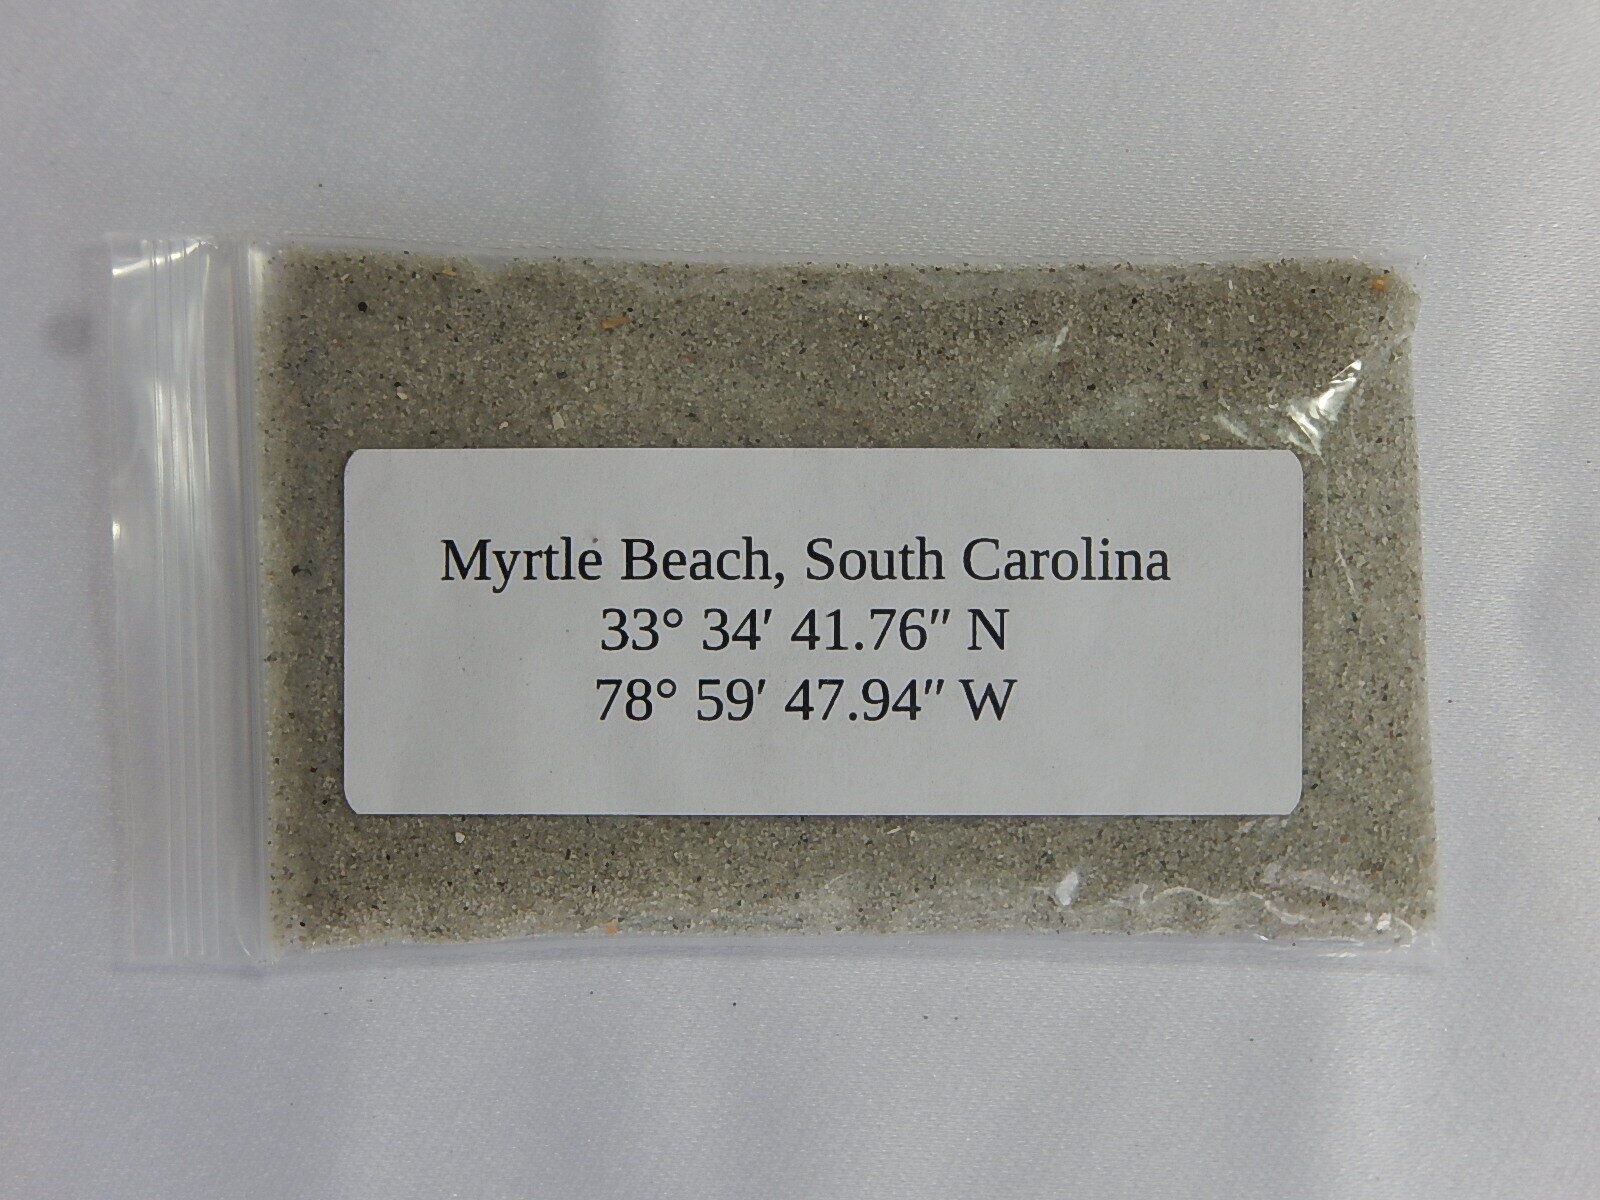 1 oz Myrtle Beach SC Natural Sand Sample Bag fine 100% real South Carolina ocean